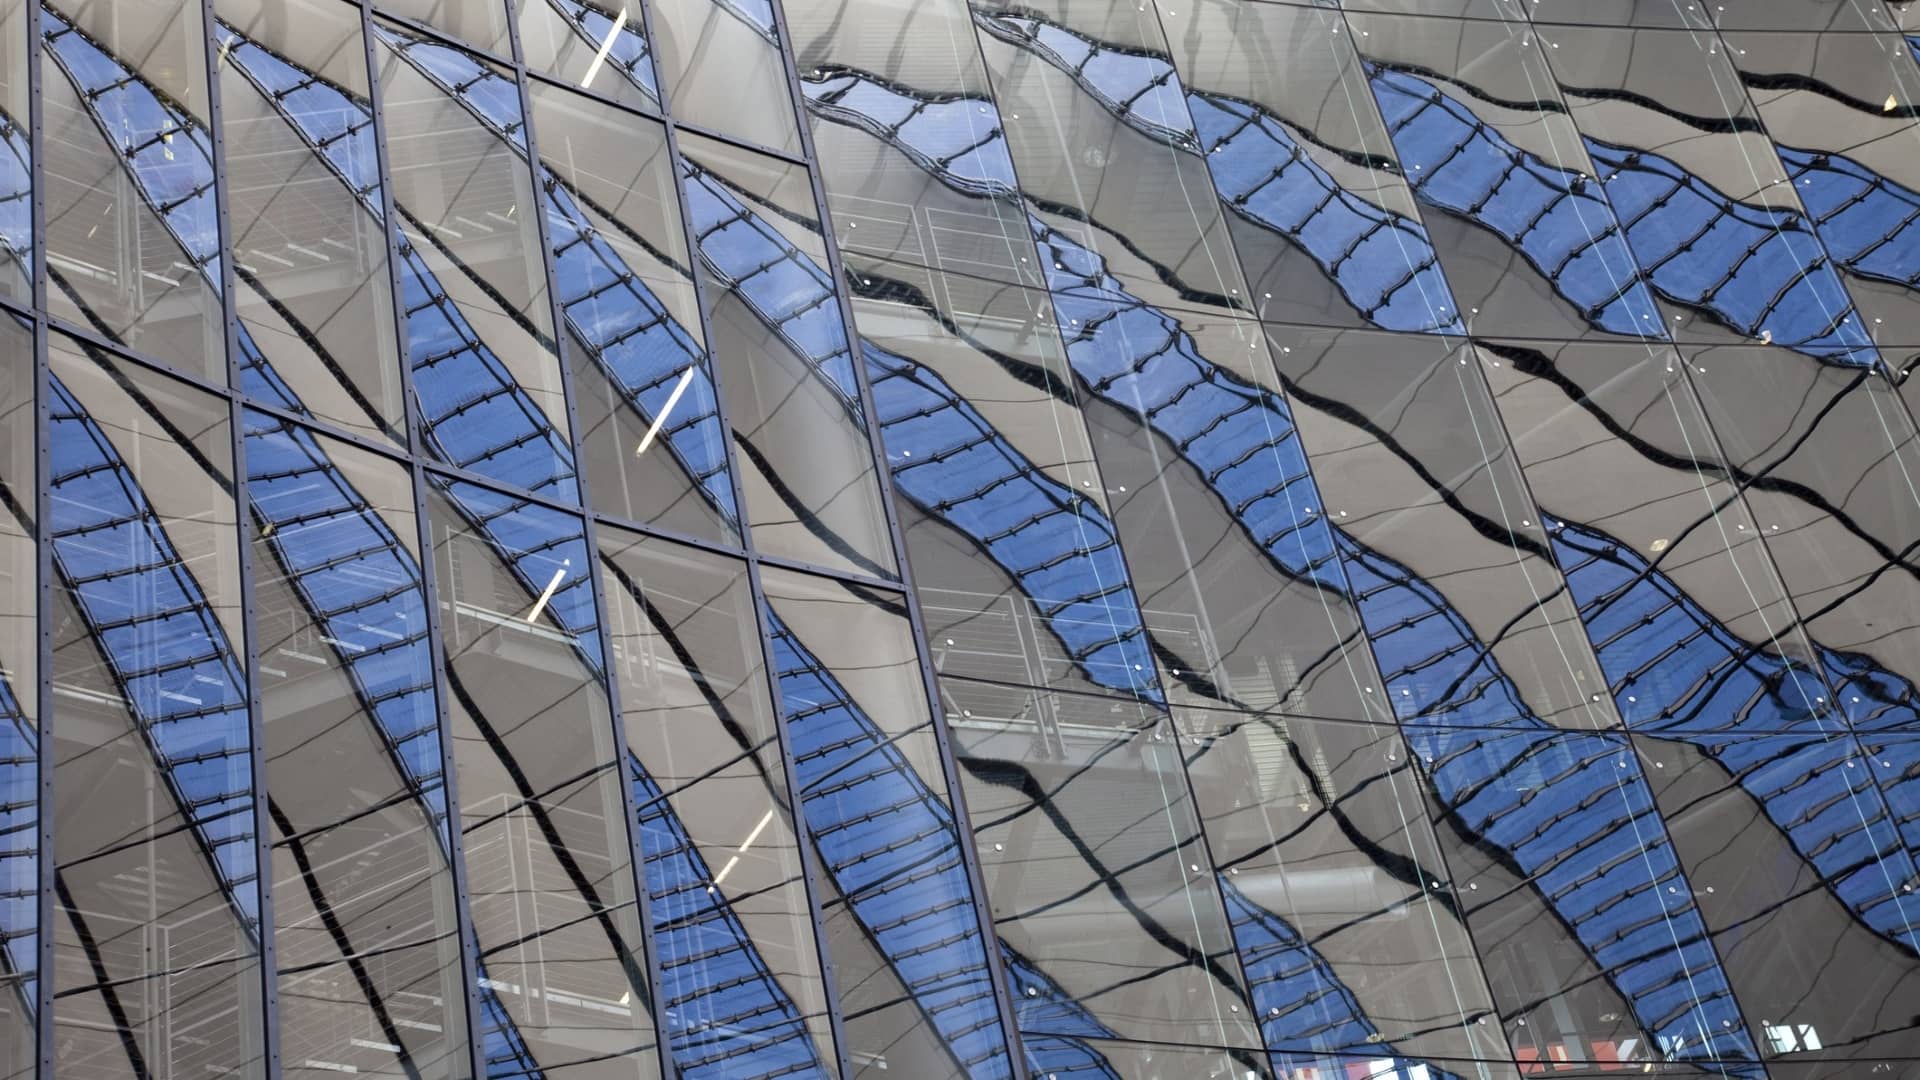 Window reflections on a modern building (Sony Center in Potsdamer Platz, Berlin, Germany).